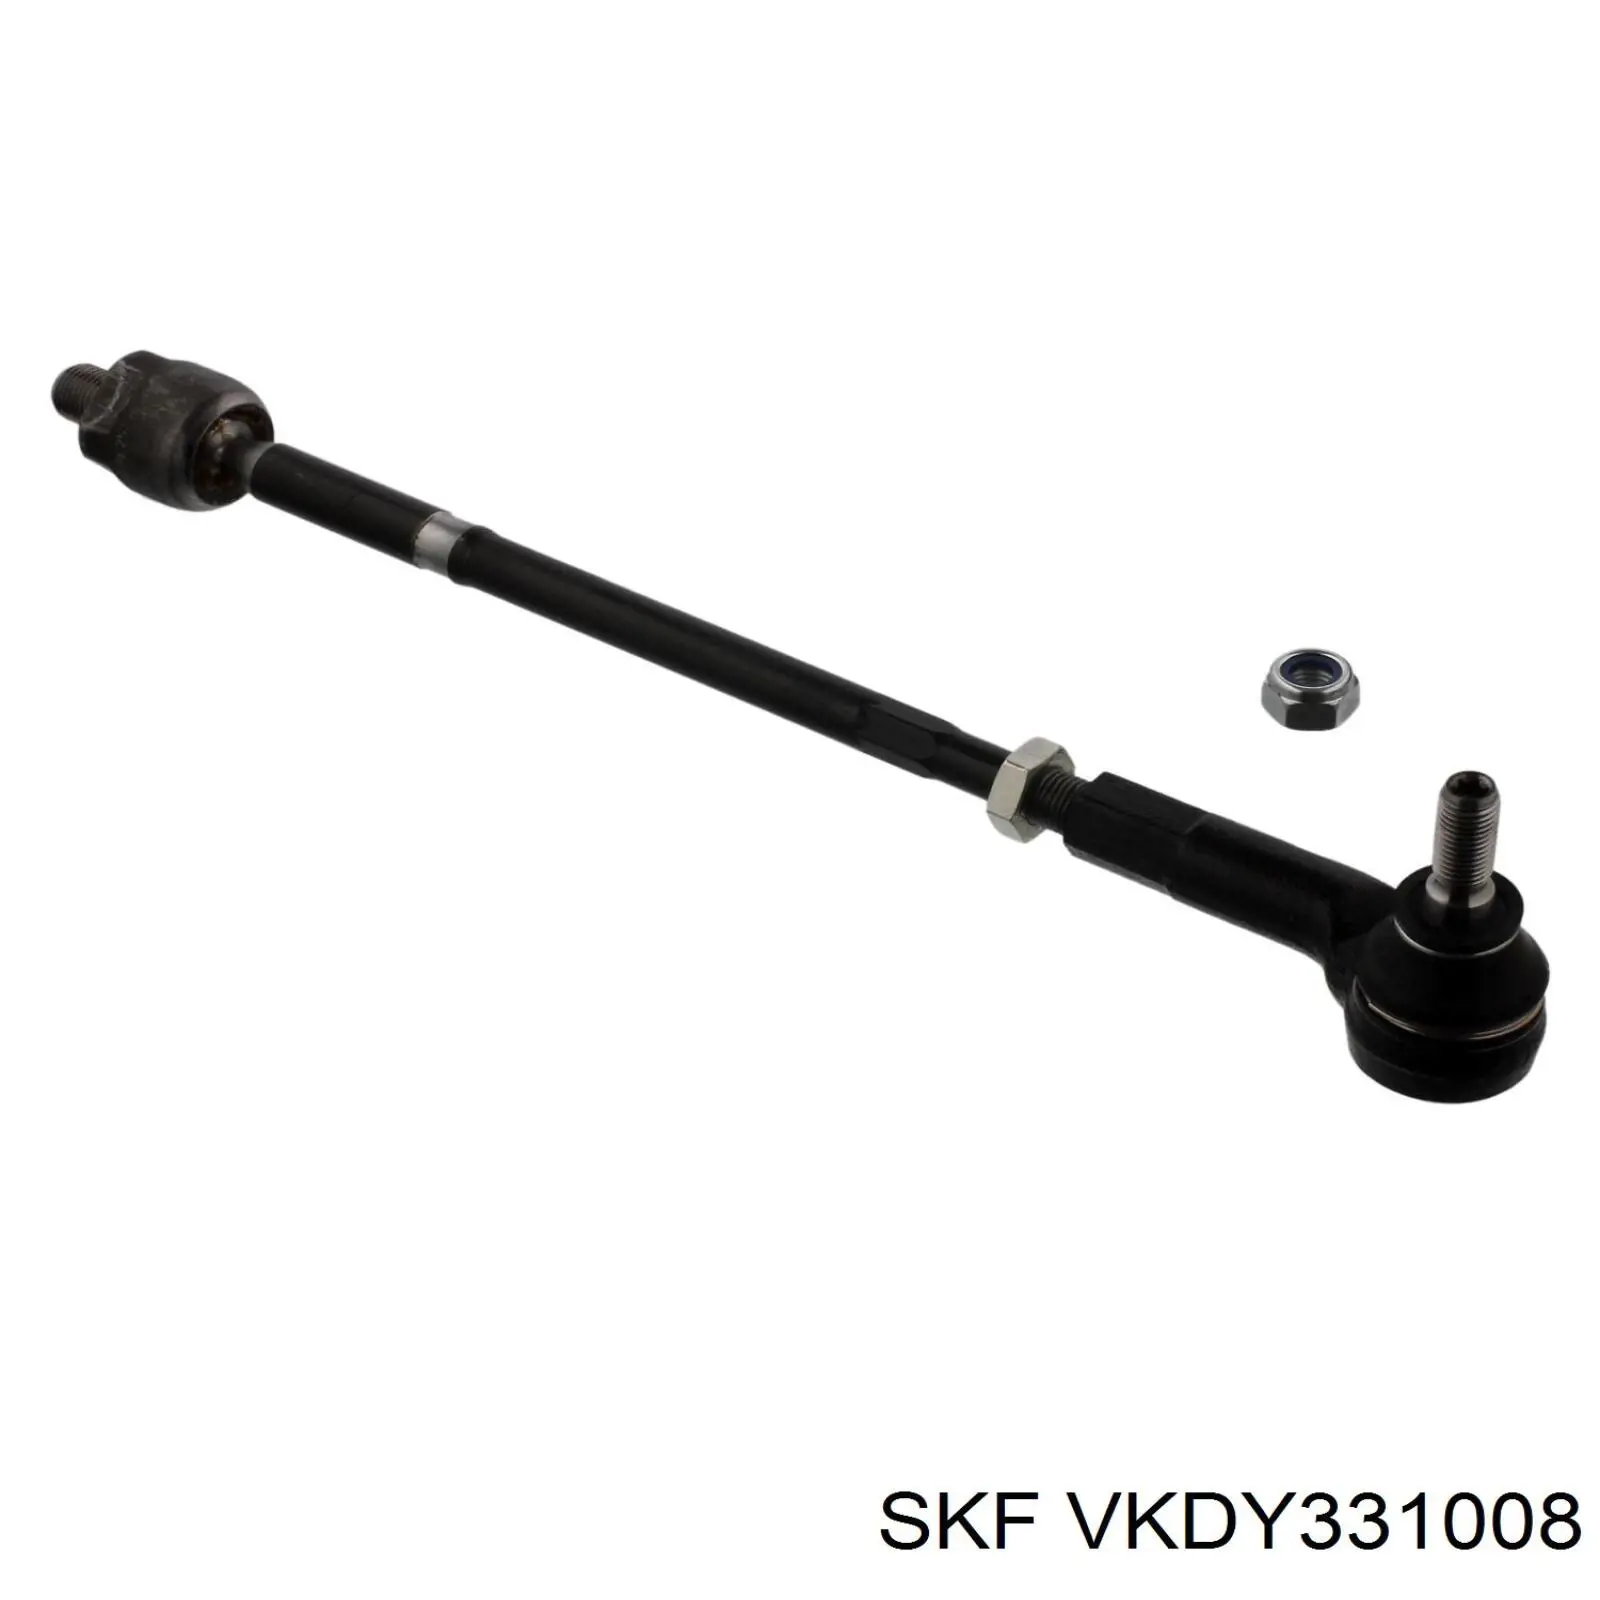 VKDY331008 SKF barra de acoplamiento completa izquierda